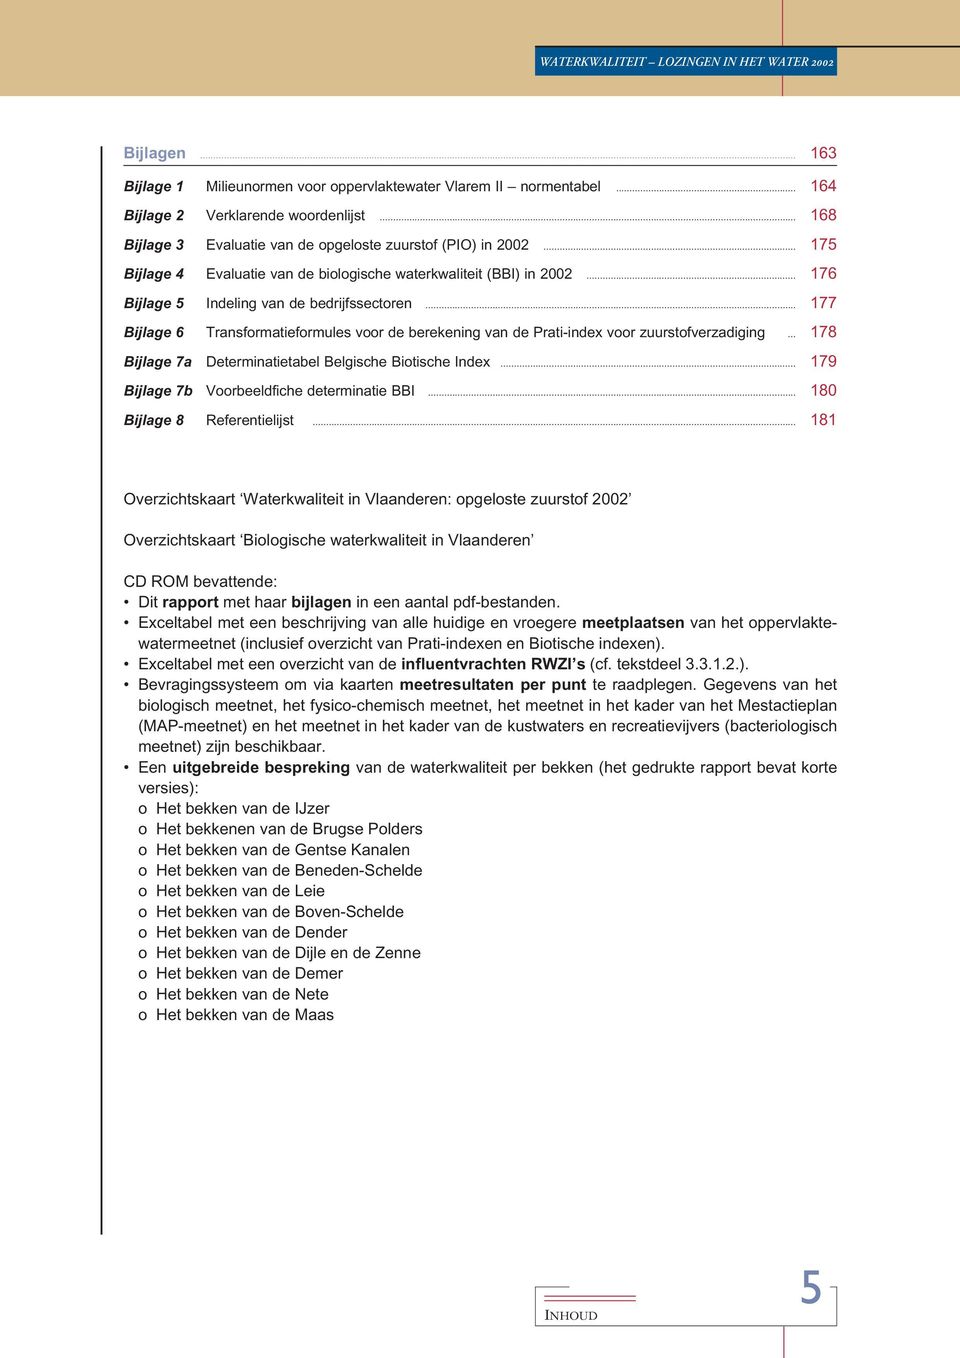 .. 177 Bijlage 6 Transformatieformules voor de berekening van de Prati-index voor zuurstofverzadiging... 178 Bijlage 7a Determinatietabel Belgische Biotische Index.